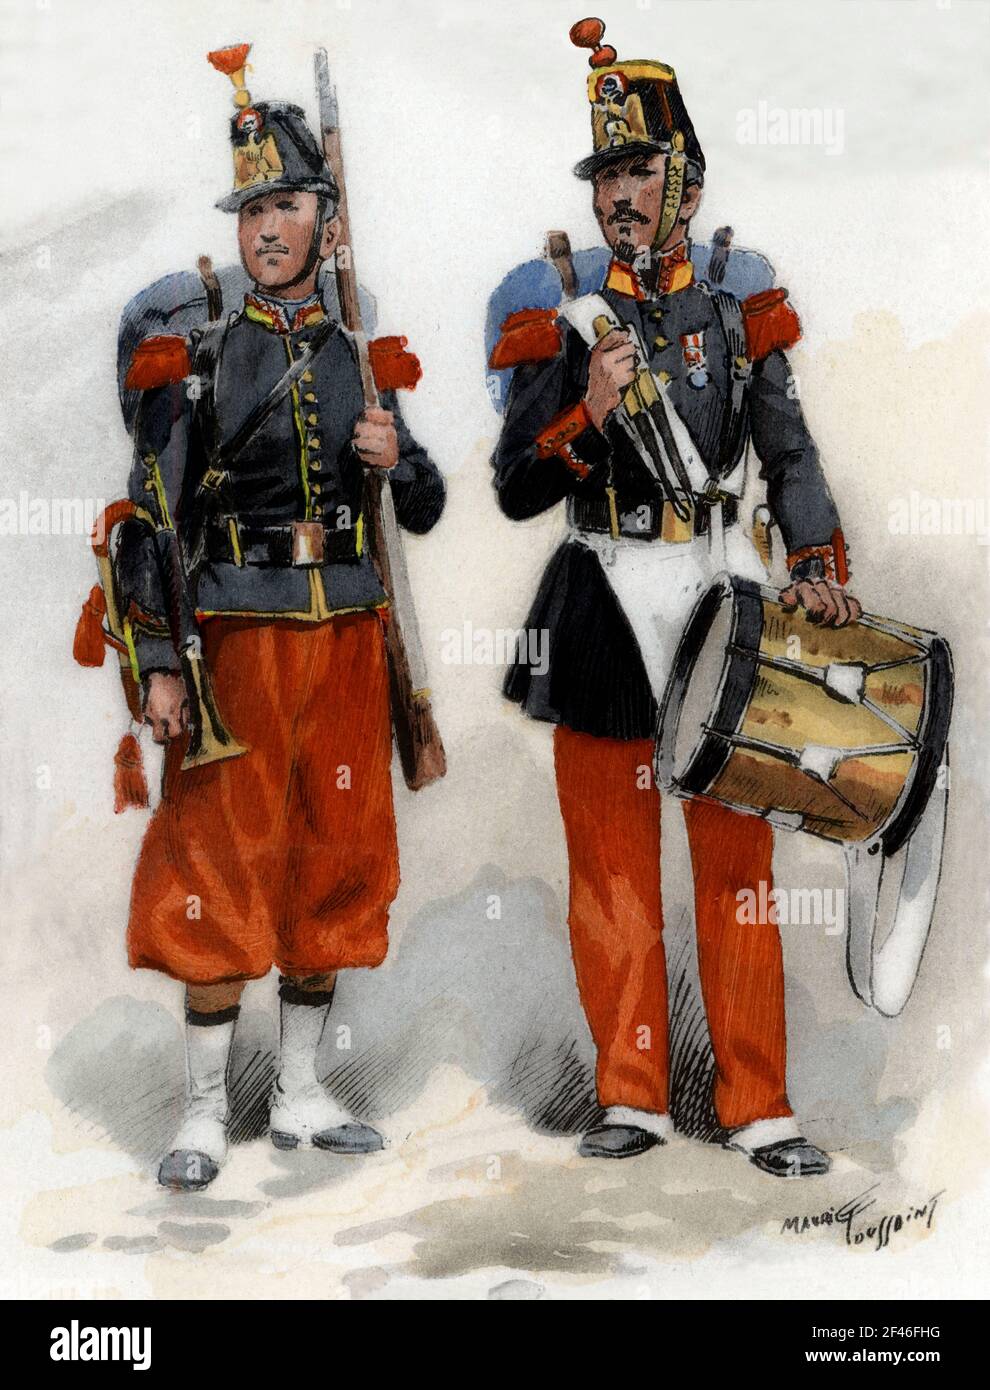 Francia. Uniformes de regimiento franceses. Corneta y tambor de infantería de línea en 1860 y 1858. Grabado de 1945. Author: MAURICE TOUSSAINT. Stock Photo